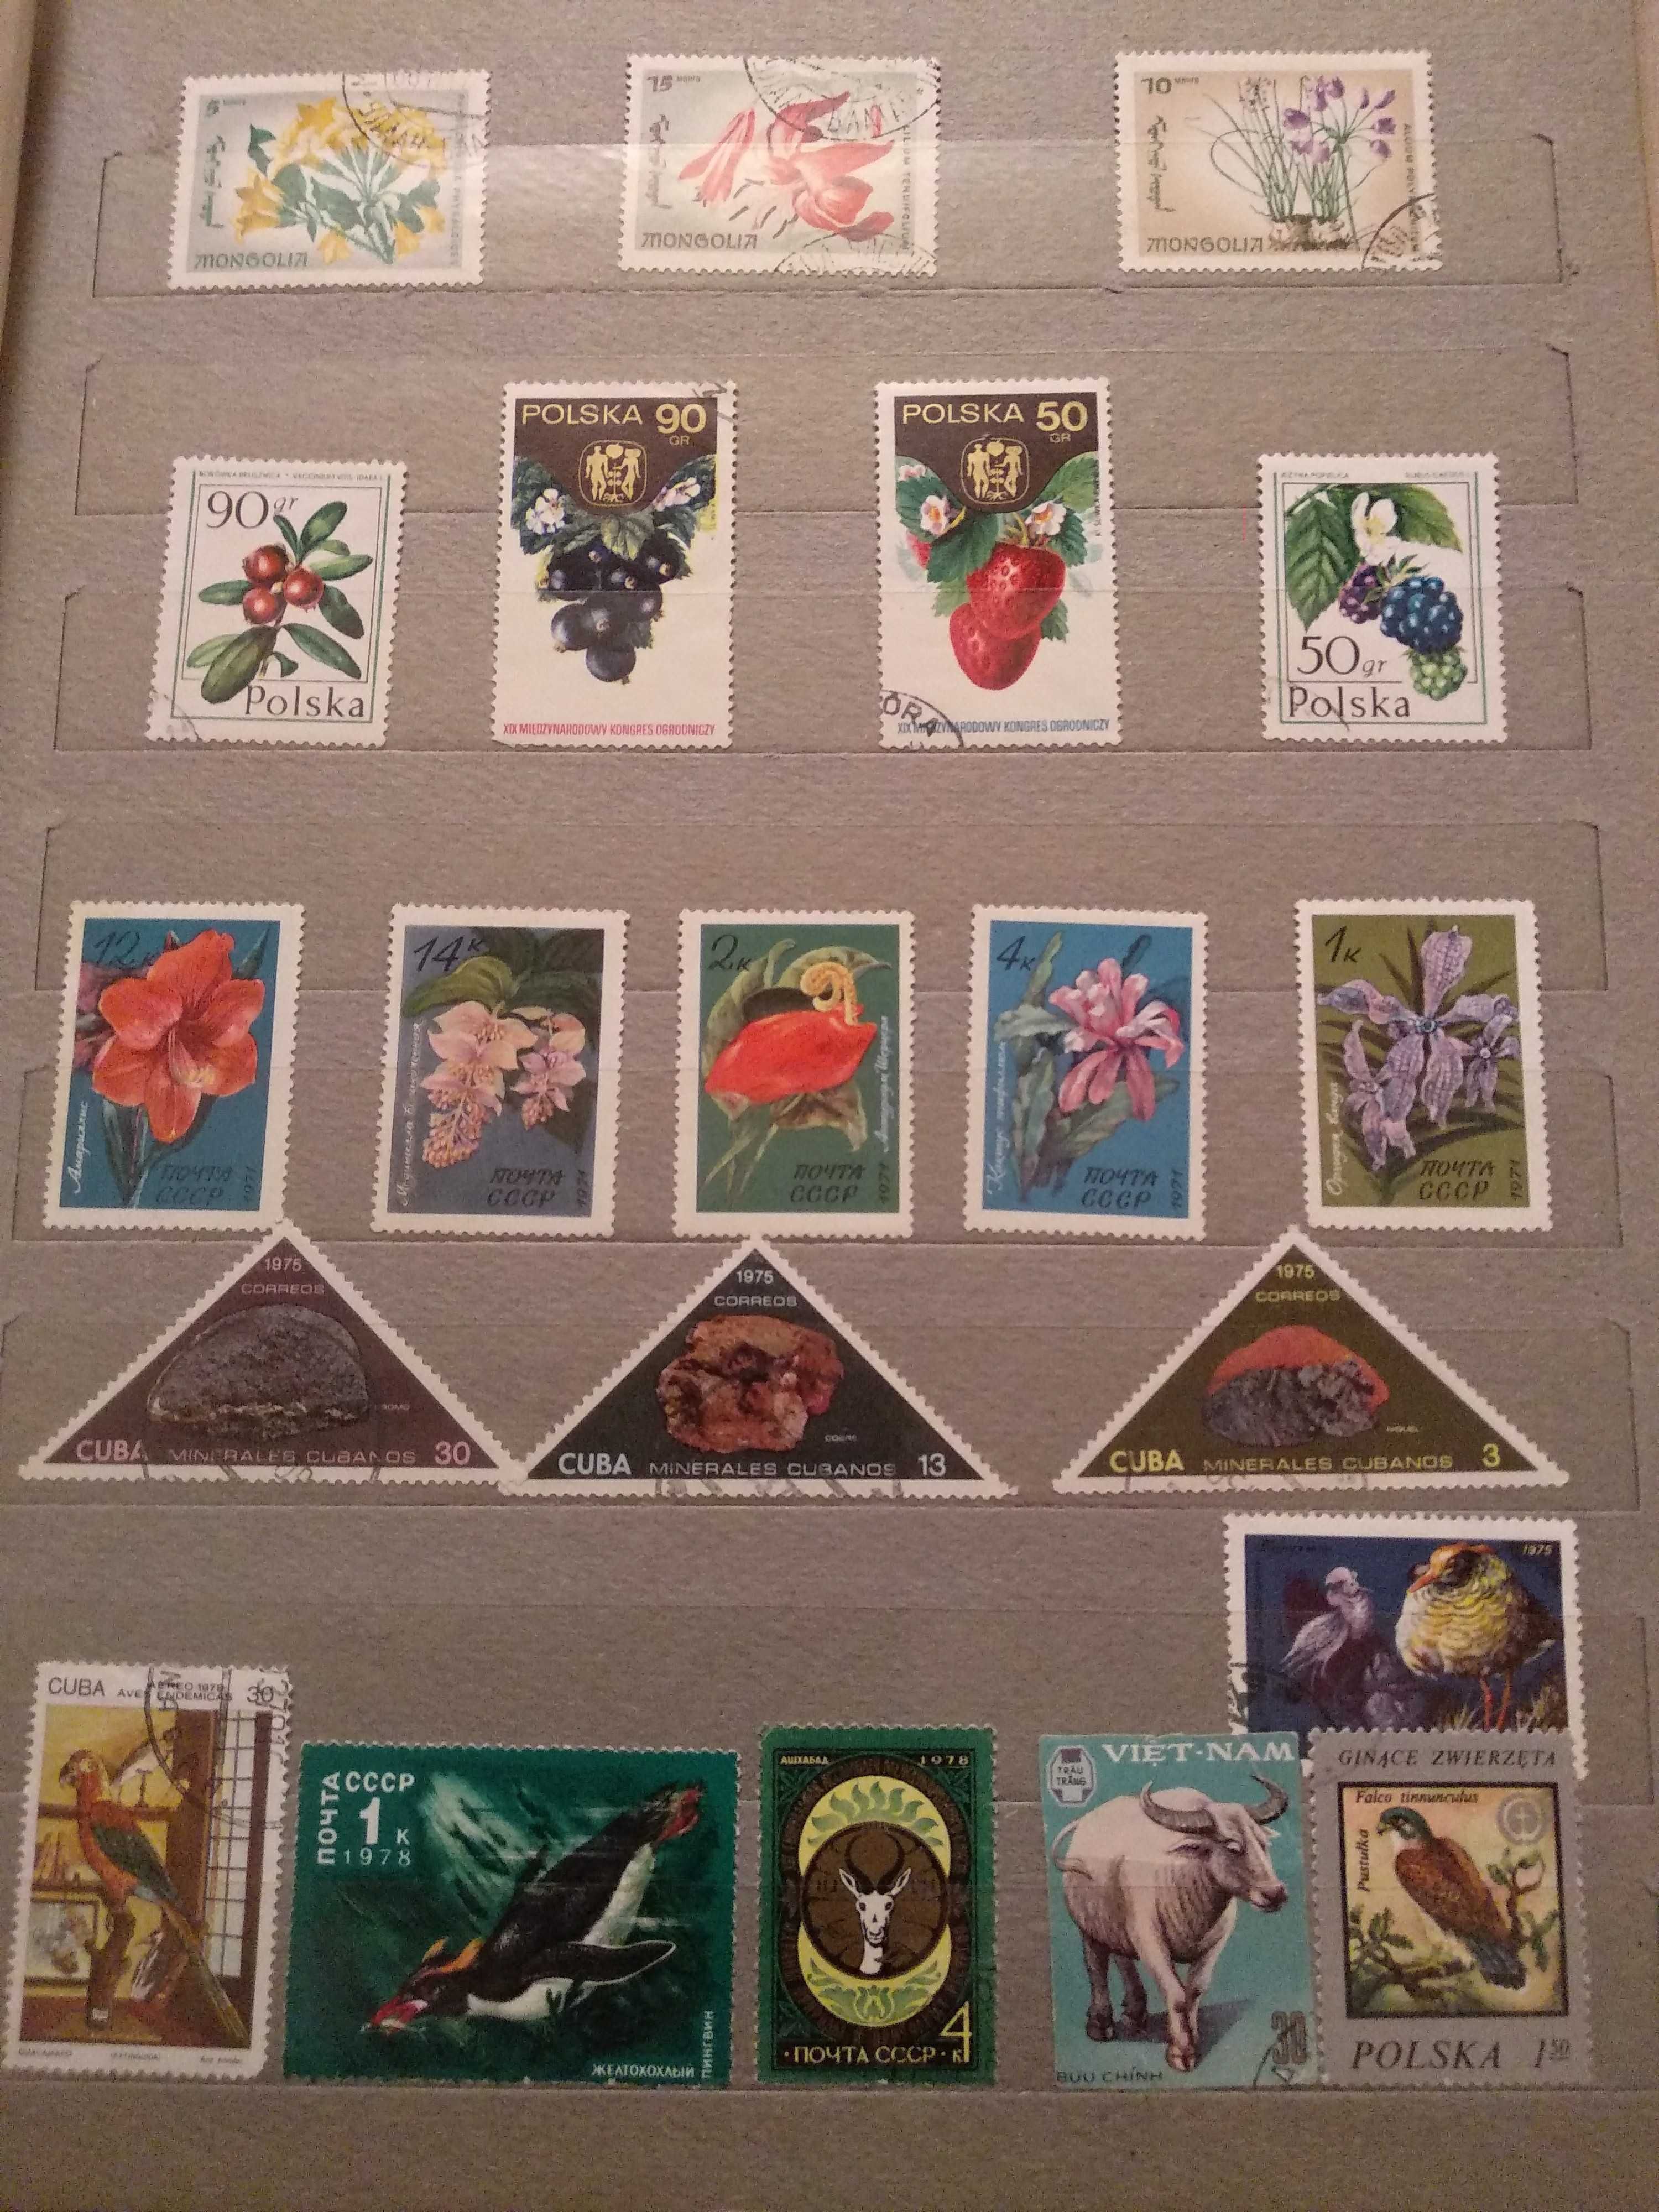 Продам коллекцию марок СССР, Вьетнам,Куба, Монголия, Польша 70-90гг